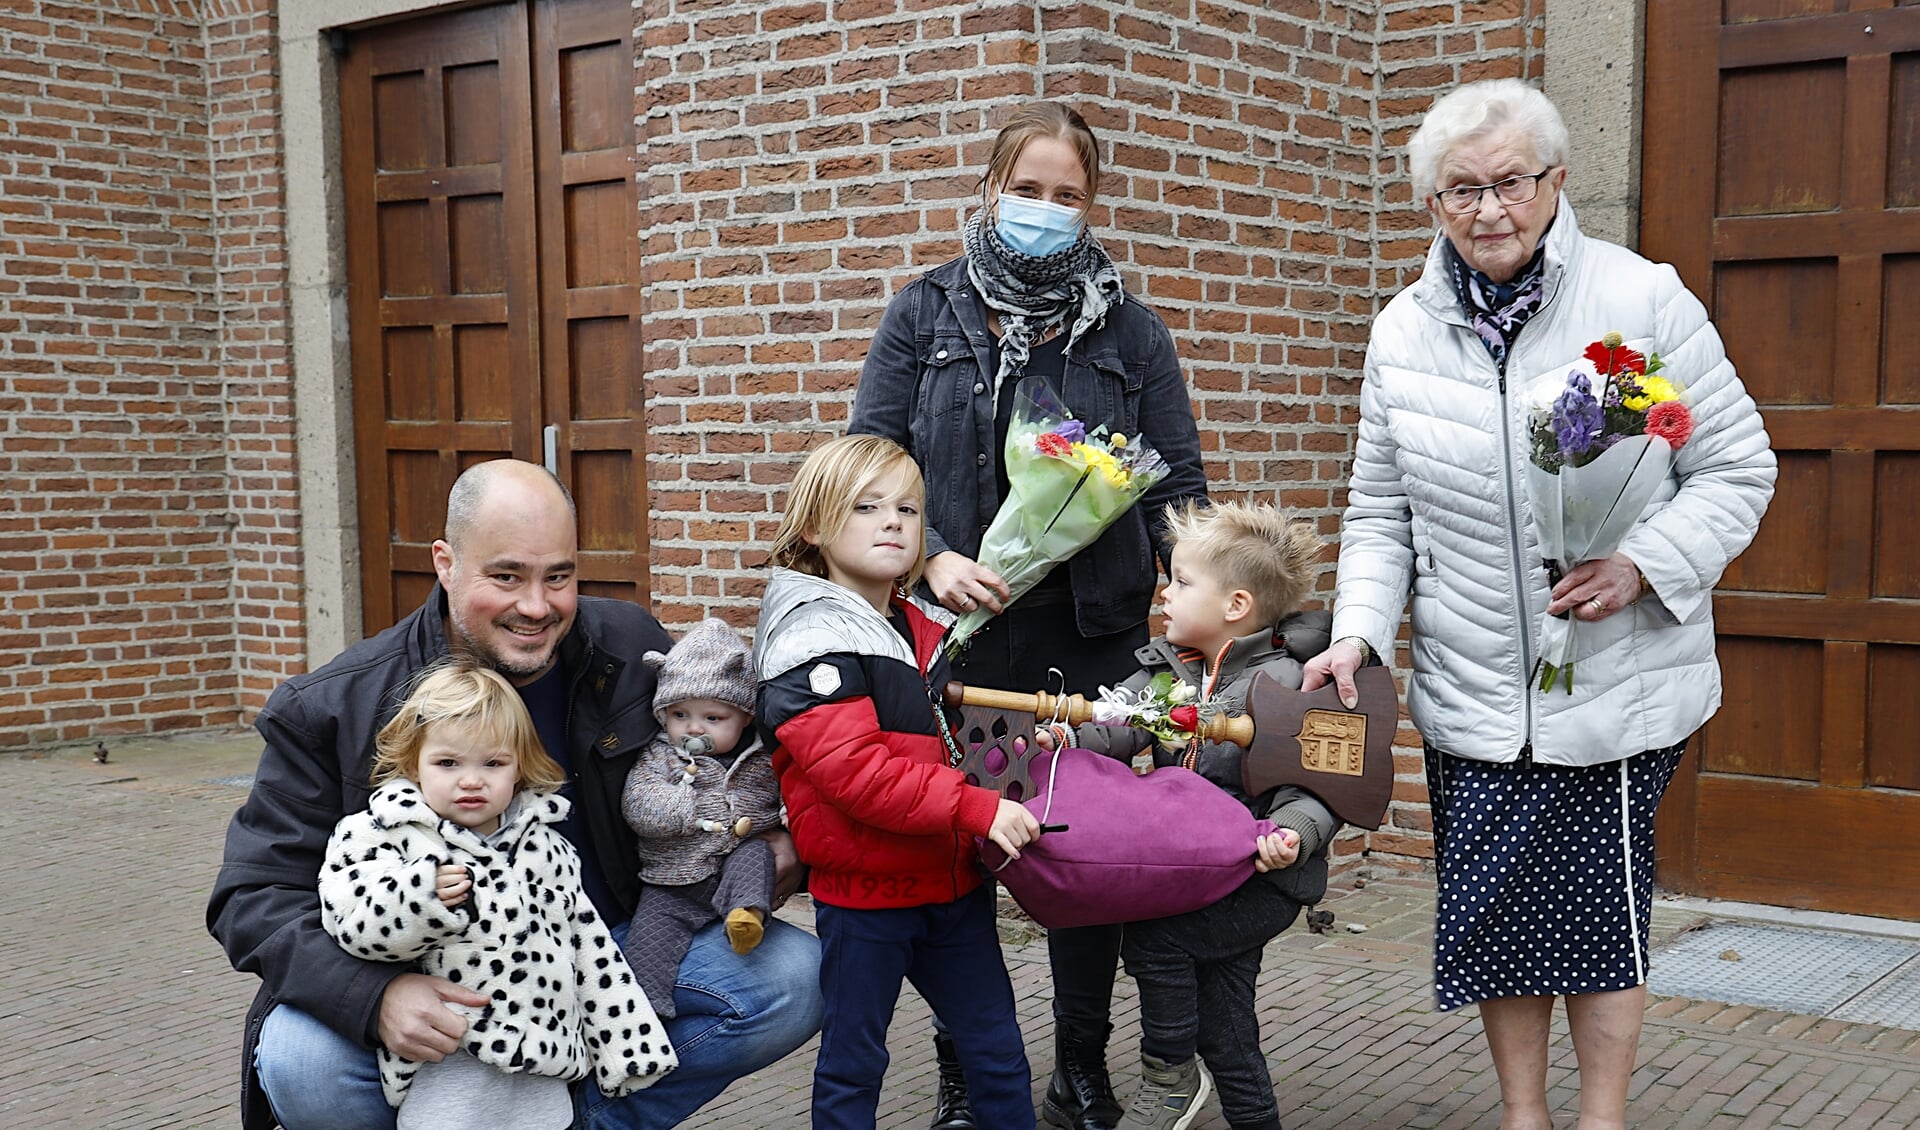 Marietje Hubers overhandigt de sleutel van de kerk symbolisch aan de familie Willems. 